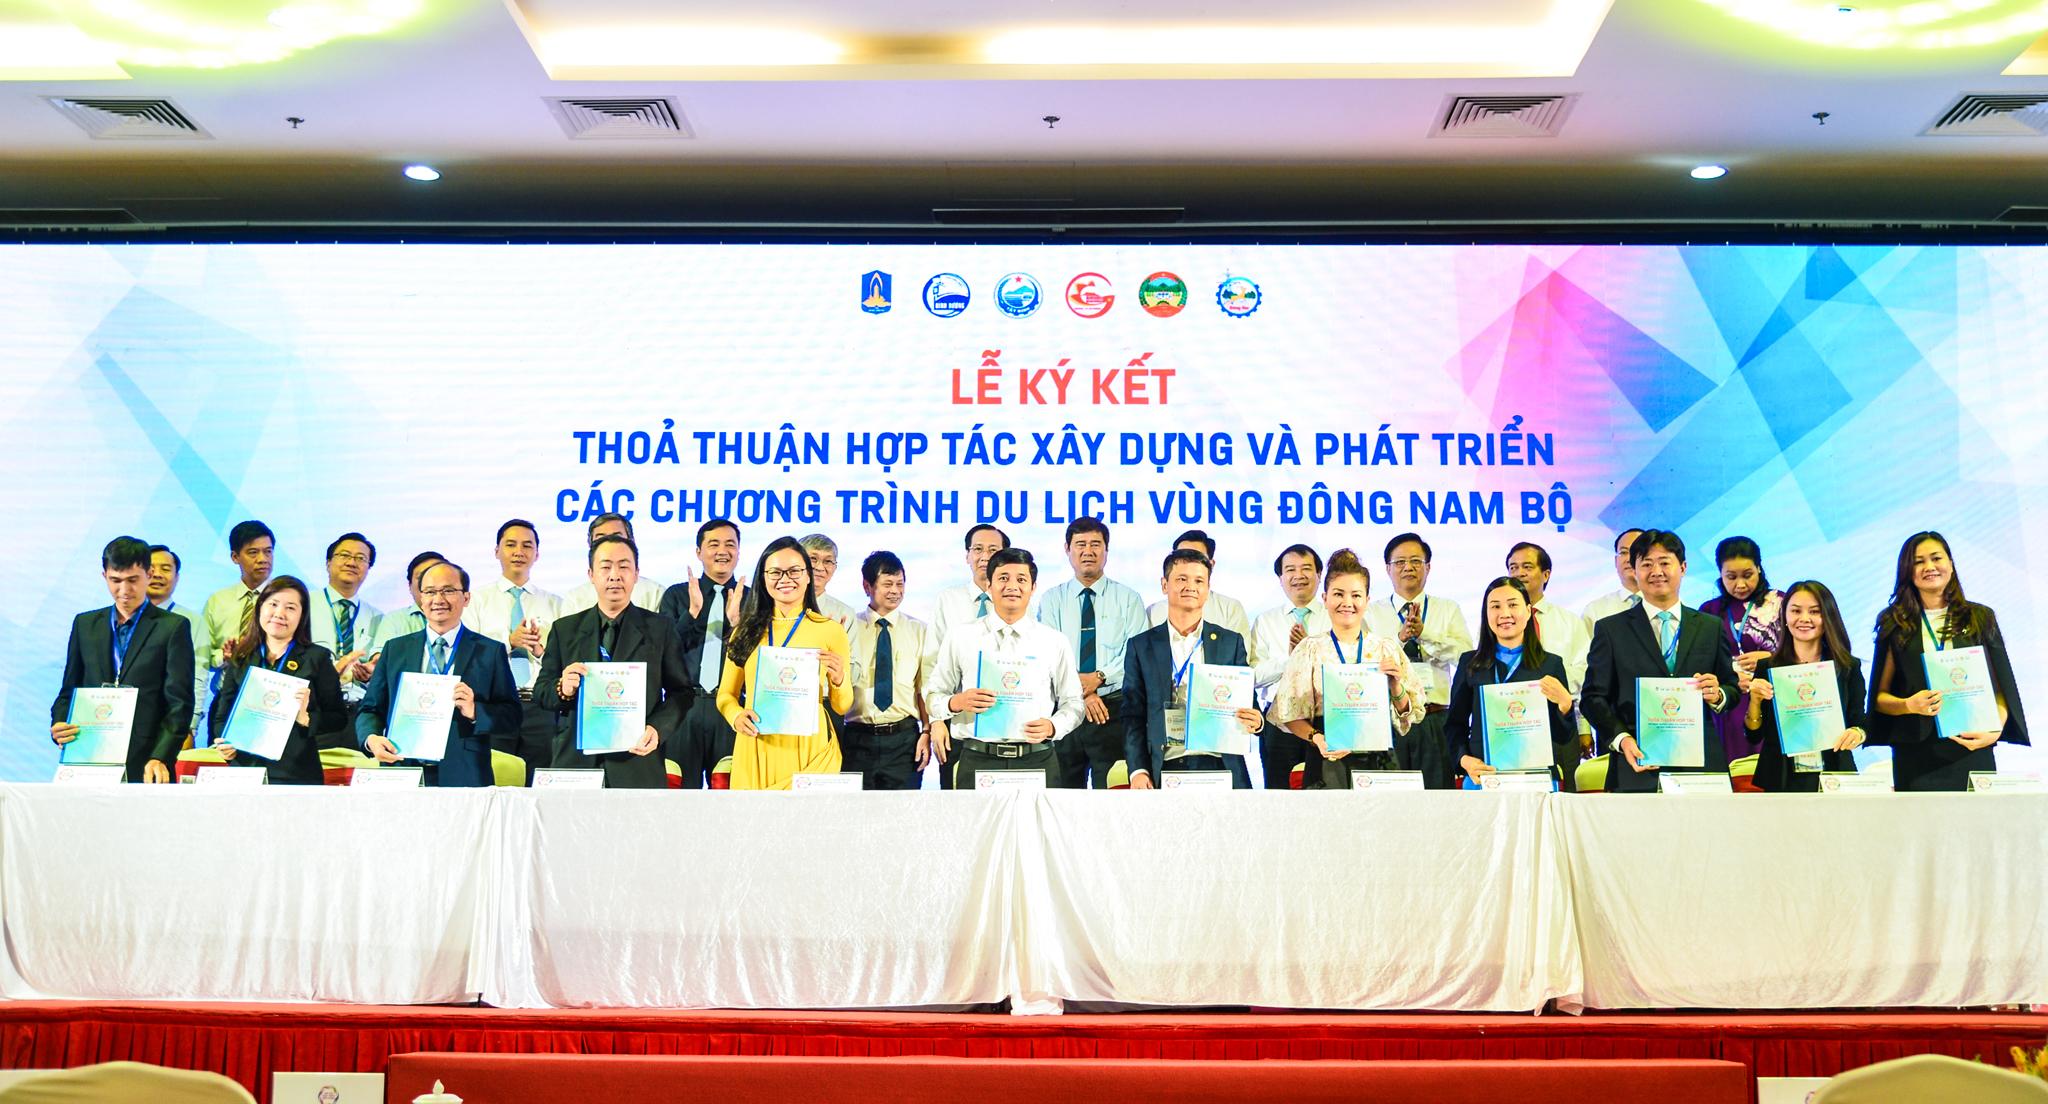 Tại hội thảo, 3 DN của BR-VT gồm: Bảo tàng Vũ khí cổ, Hồ Mây Park và Vũng Tàu Marina đã ký kết hợp tác với 9 DN lữ hành TP. Hồ Chí Minh.